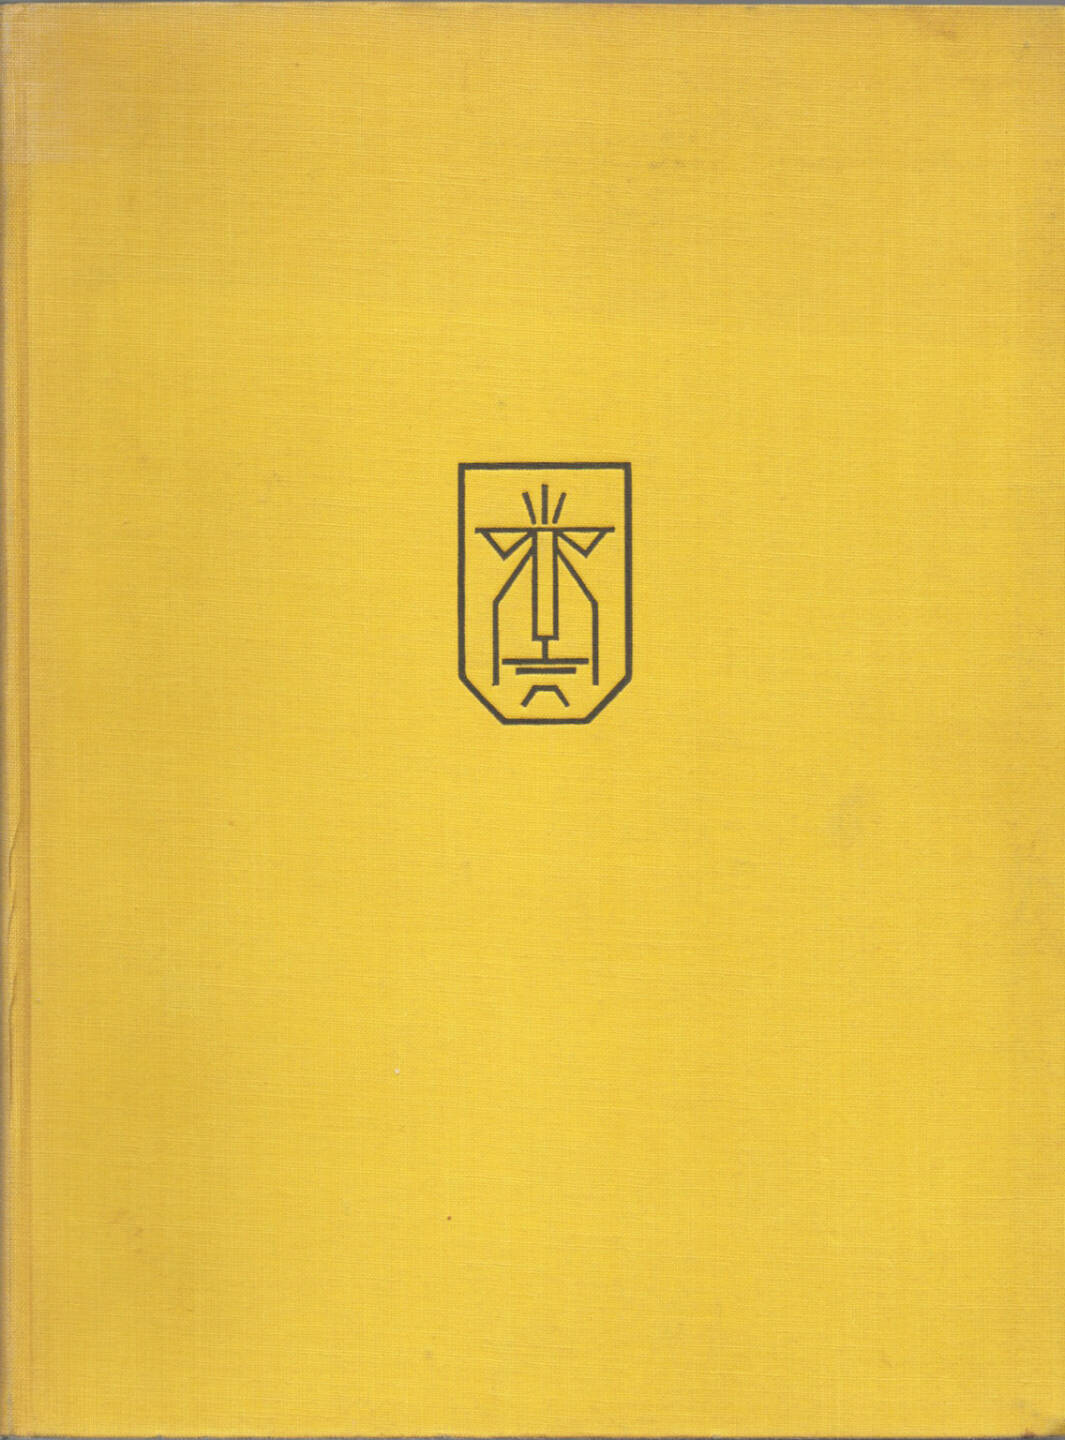 August Sander - Antlitz Der Zeit (1929), 1500-2500 Euro - http://josefchladek.com/book/august_sander_-_antlitz_der_zeit